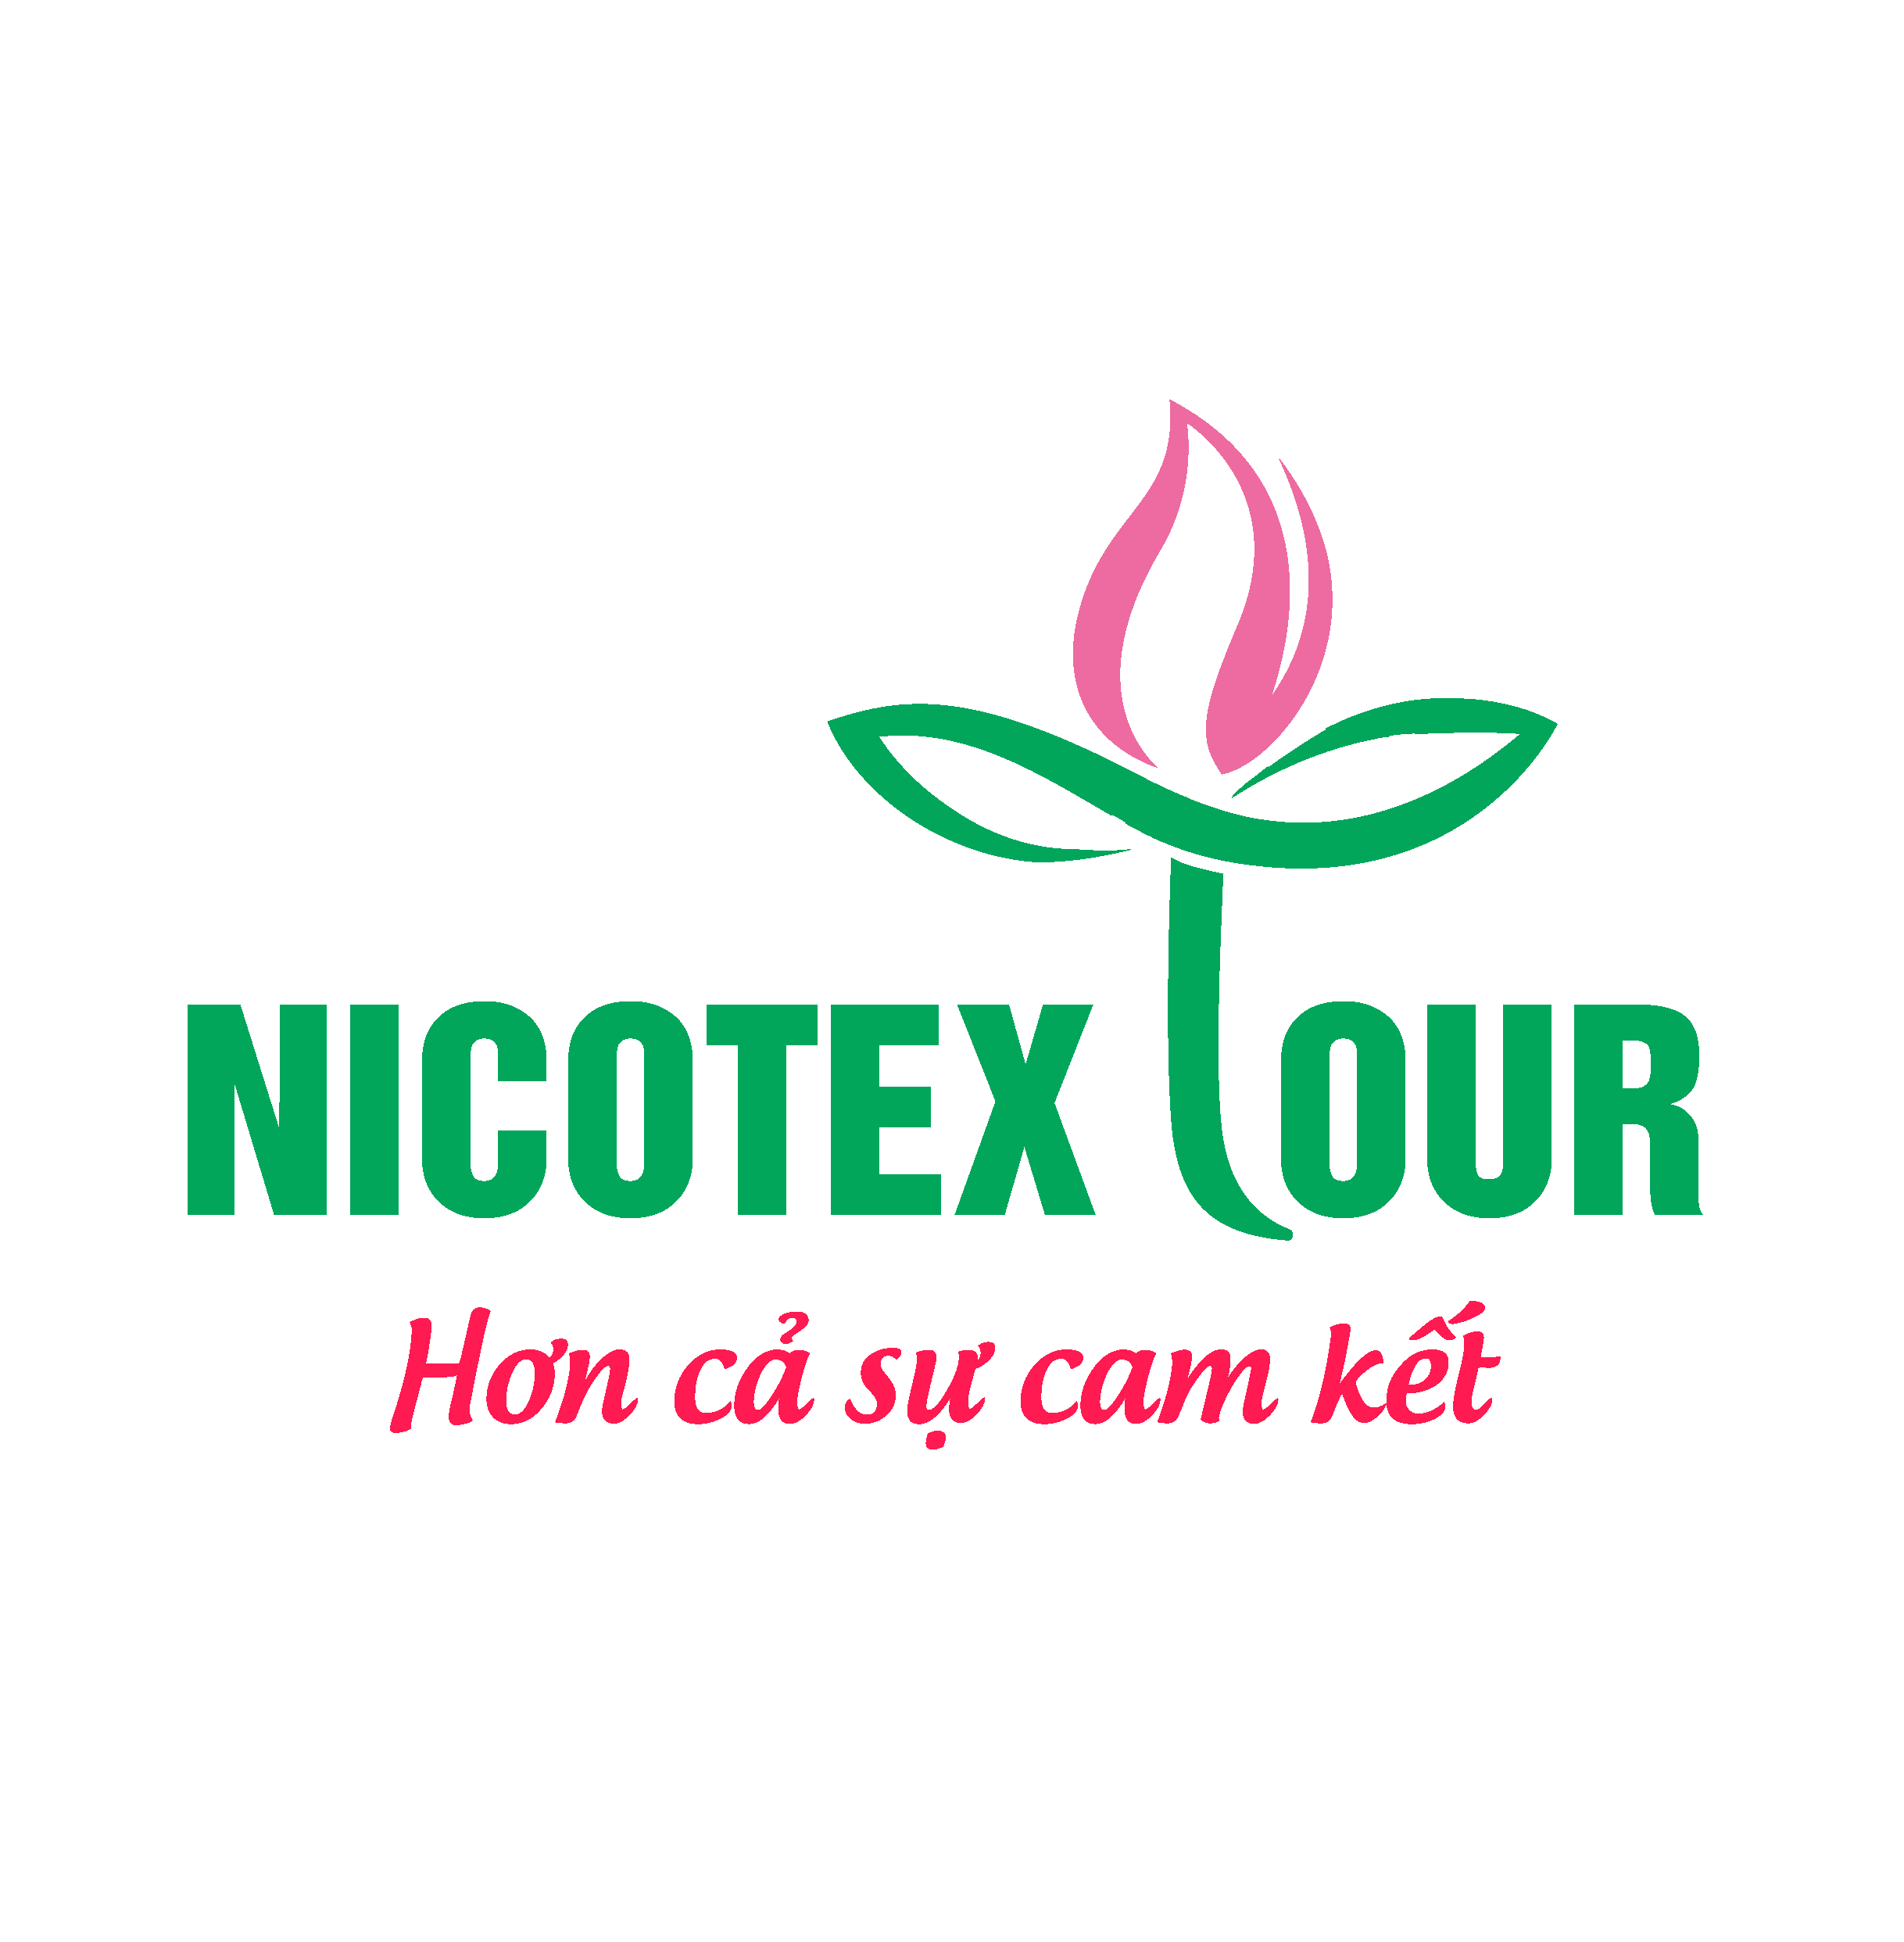 Nicotextour